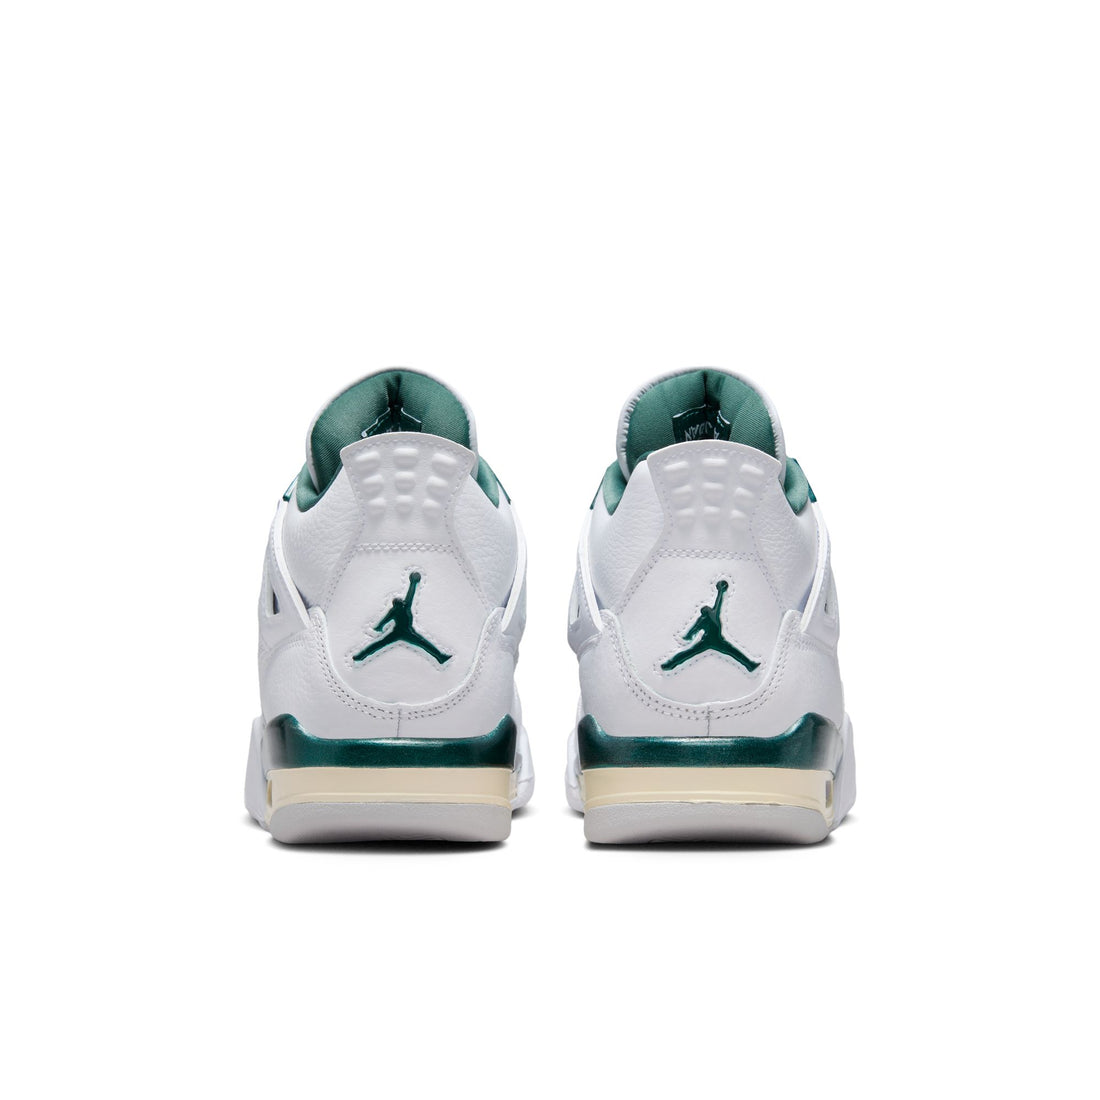 Air Jordan 4 Retro GS (White/Oxidized Green/White)